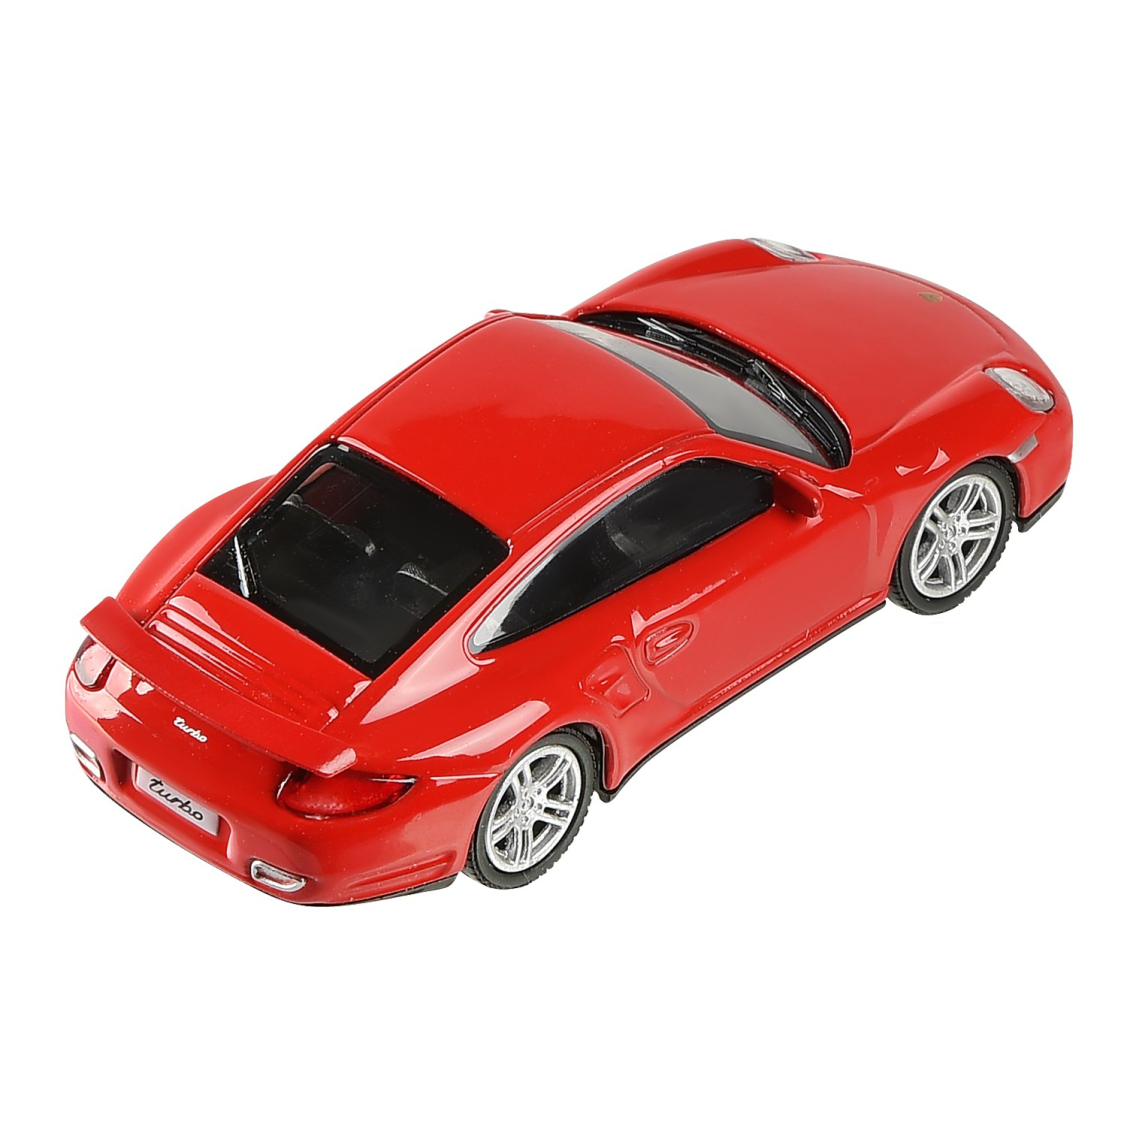 Машинка металлическая Uni-Fortune RMZ City 1:43 Porsche 911 Turbo, без механизмов (цвет красный)